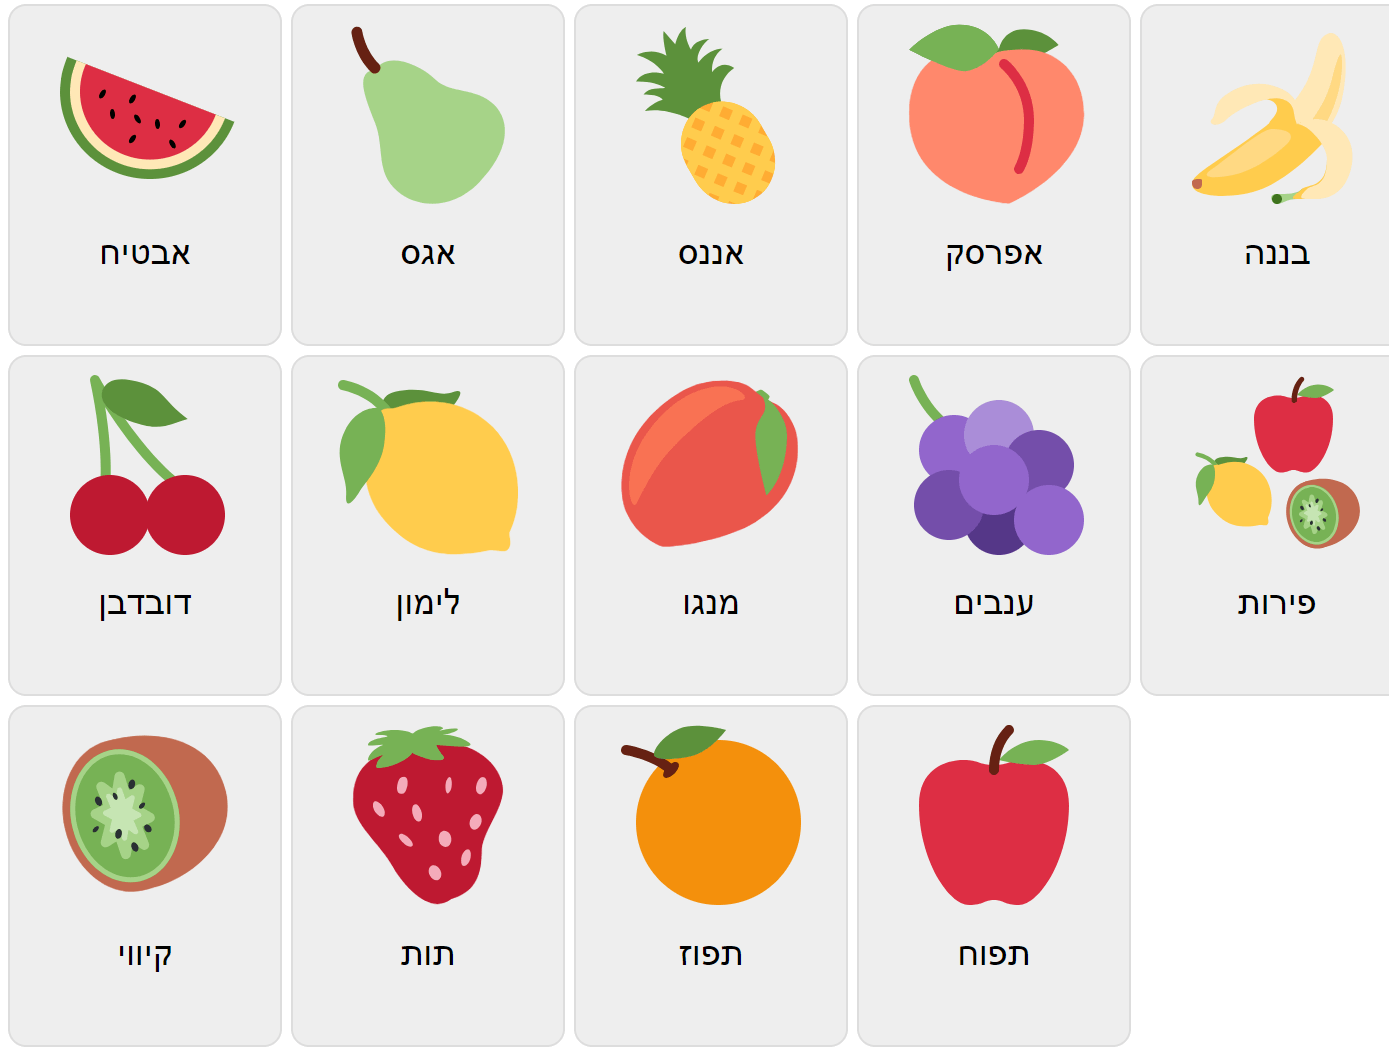 Fruits in Hebrew